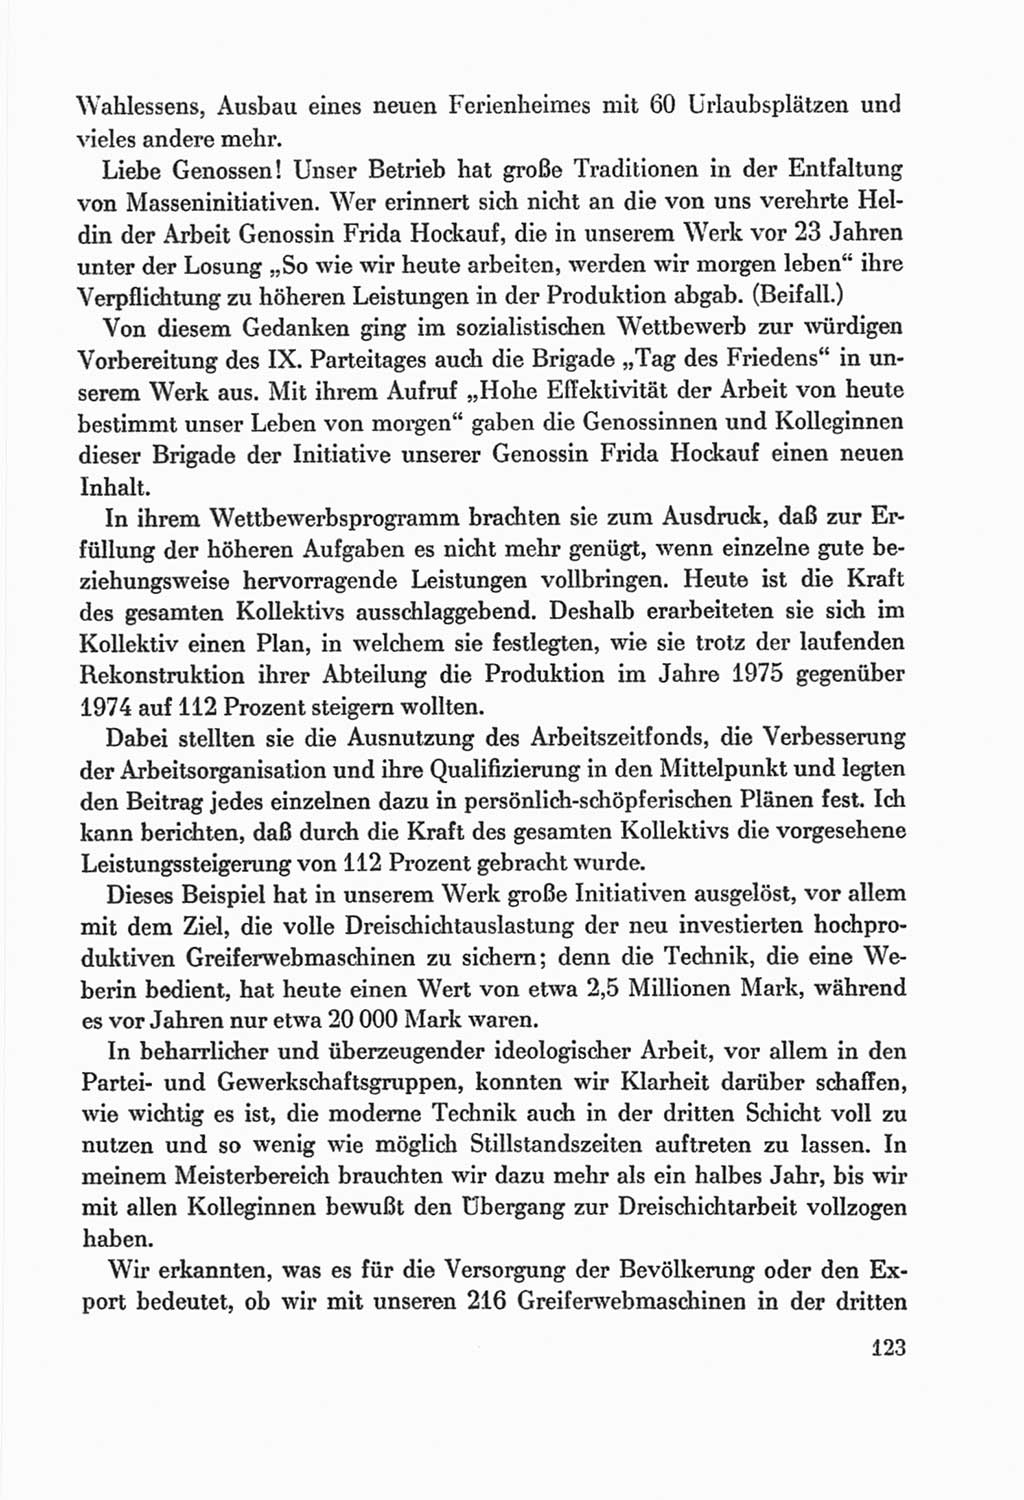 Protokoll der Verhandlungen des Ⅸ. Parteitages der Sozialistischen Einheitspartei Deutschlands (SED) [Deutsche Demokratische Republik (DDR)] 1976, Band 2, Seite 123 (Prot. Verh. Ⅸ. PT SED DDR 1976, Bd. 2, S. 123)